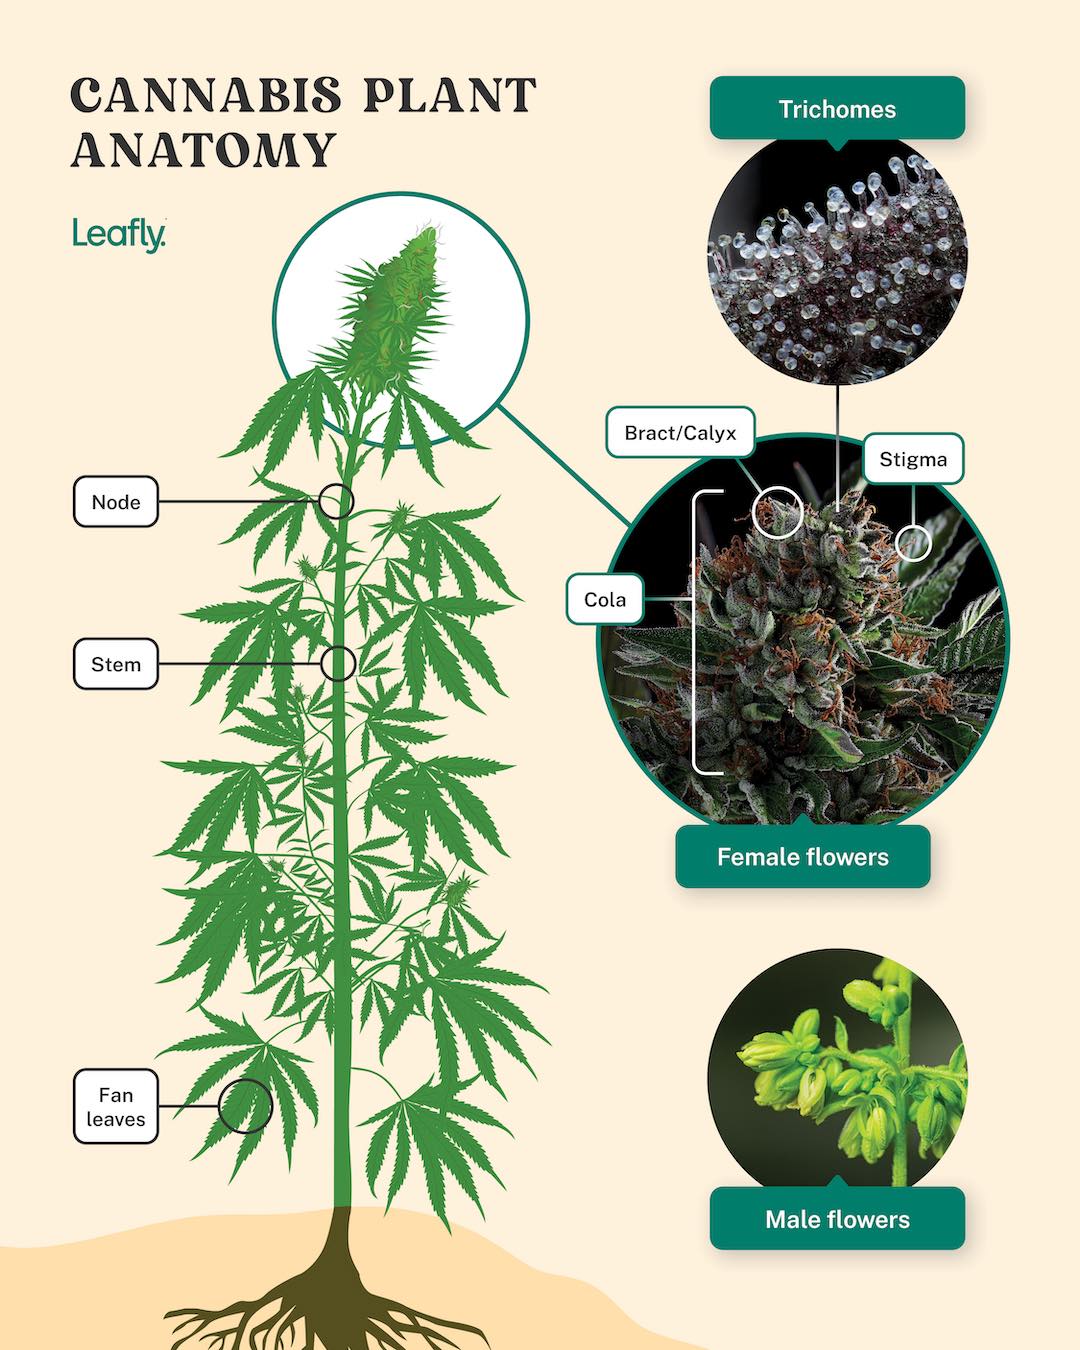 Marijuana plant anatomy and life cycles